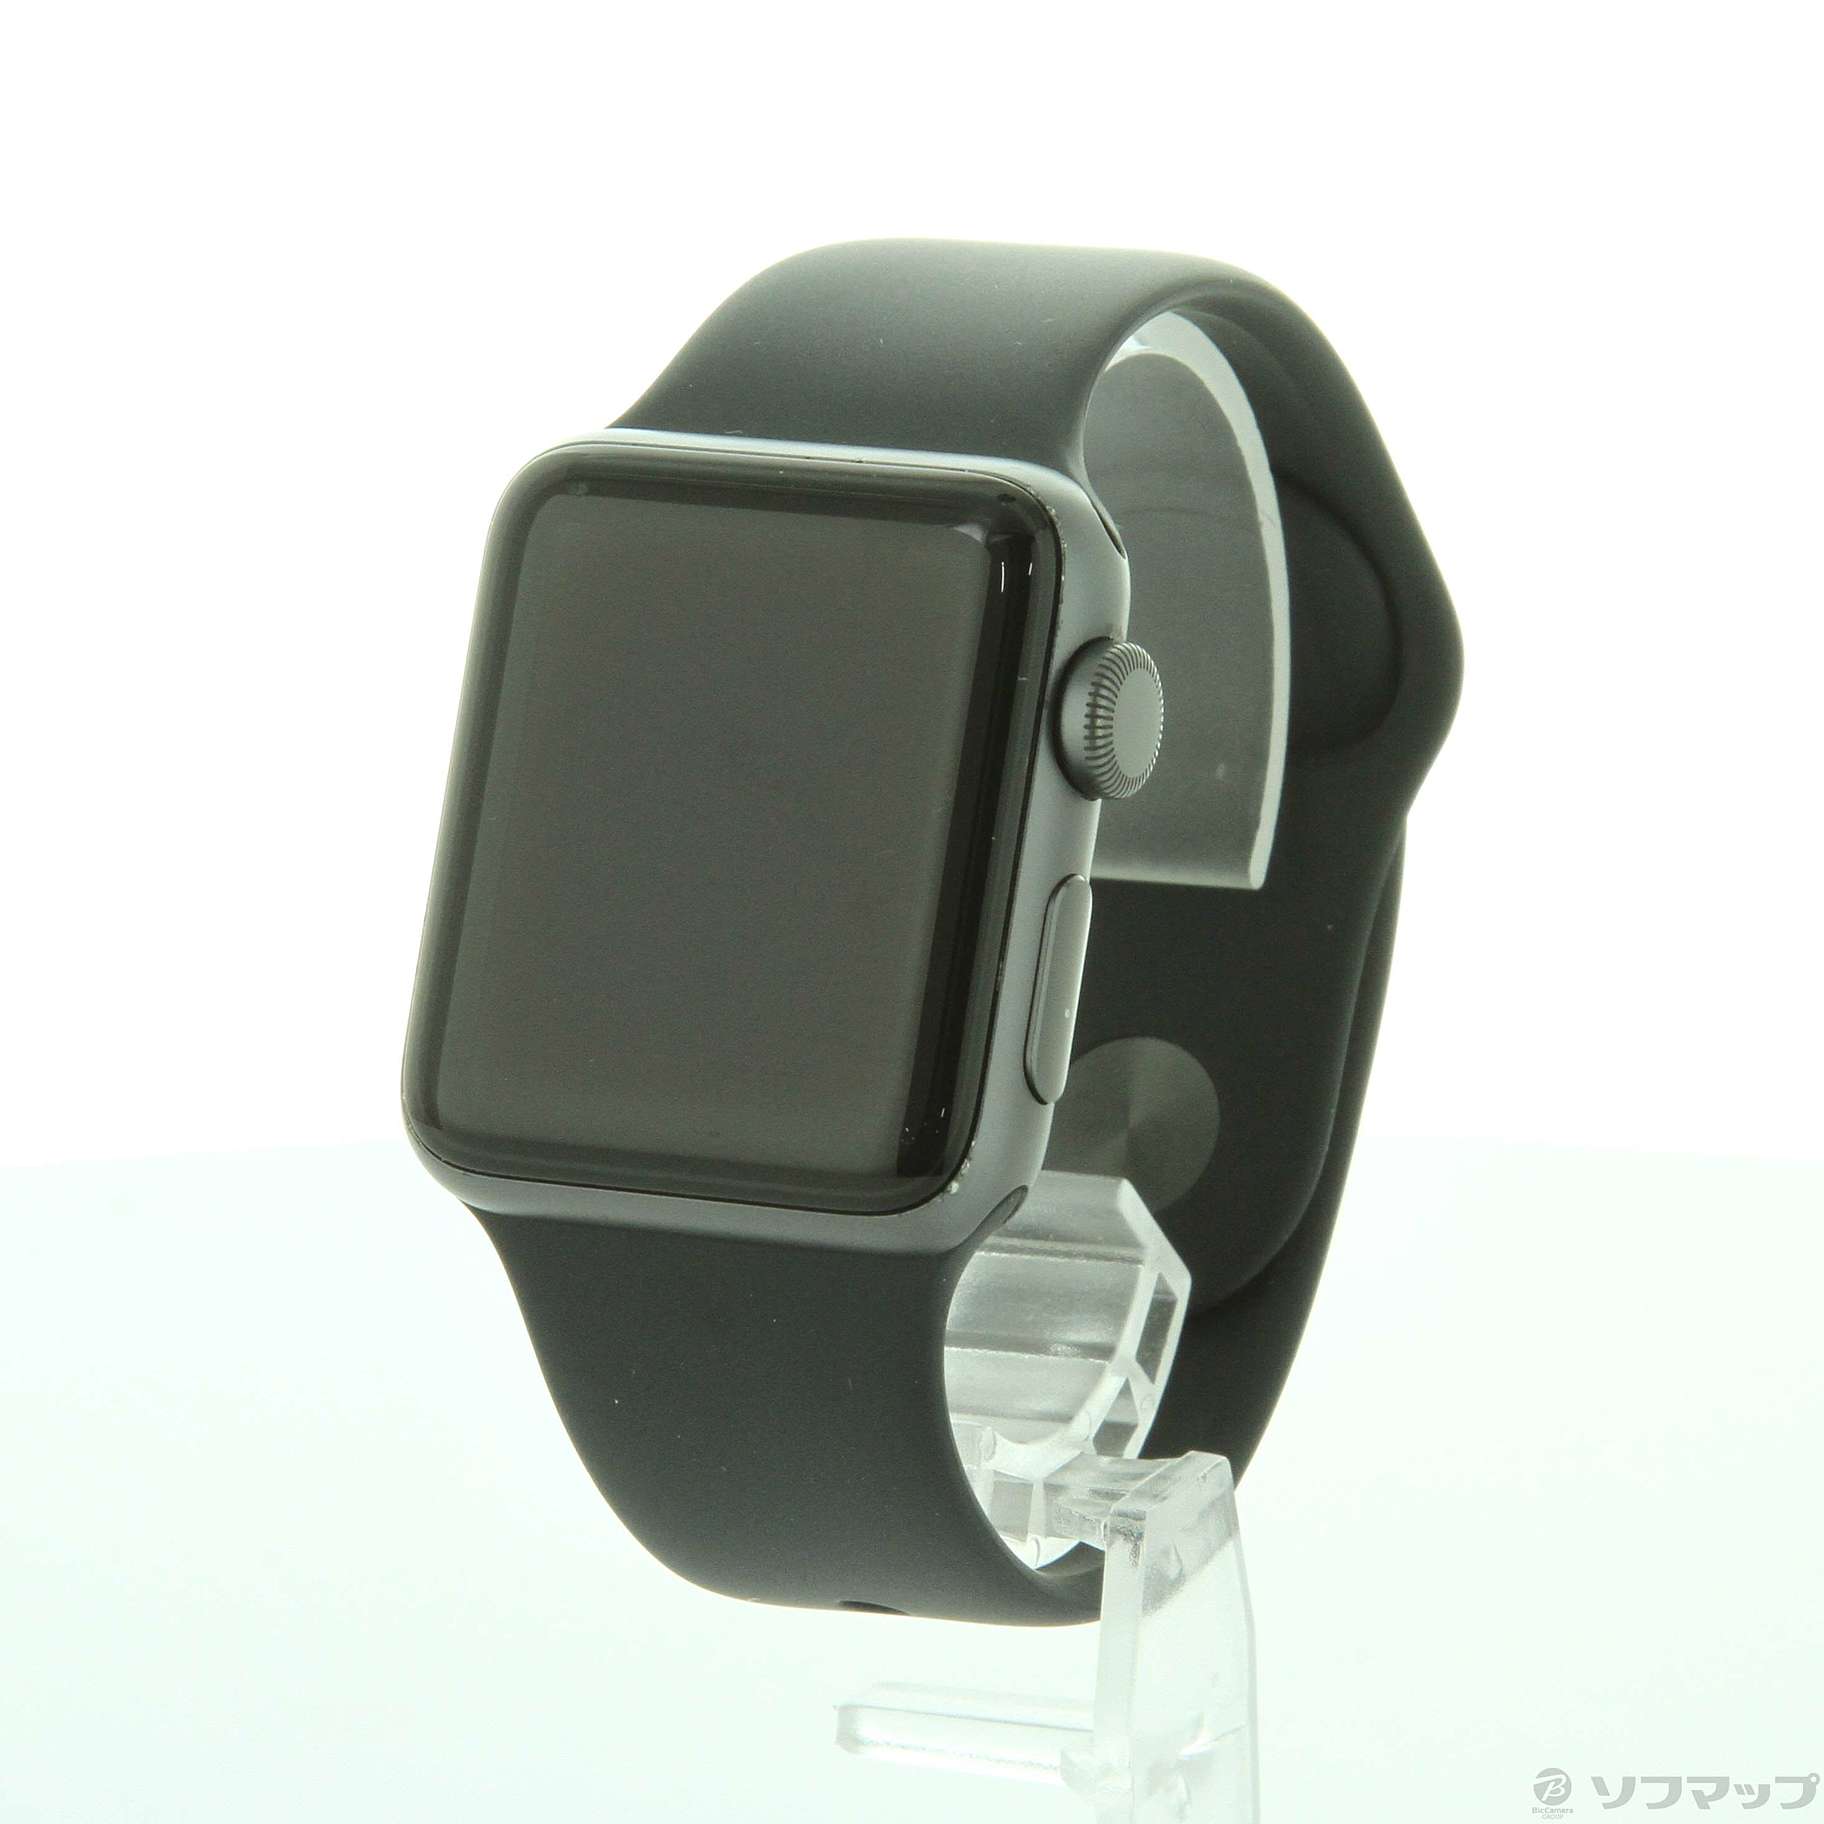 中古品〕 Apple Watch Series 3 GPS 38mm スペースグレイアルミニウム 